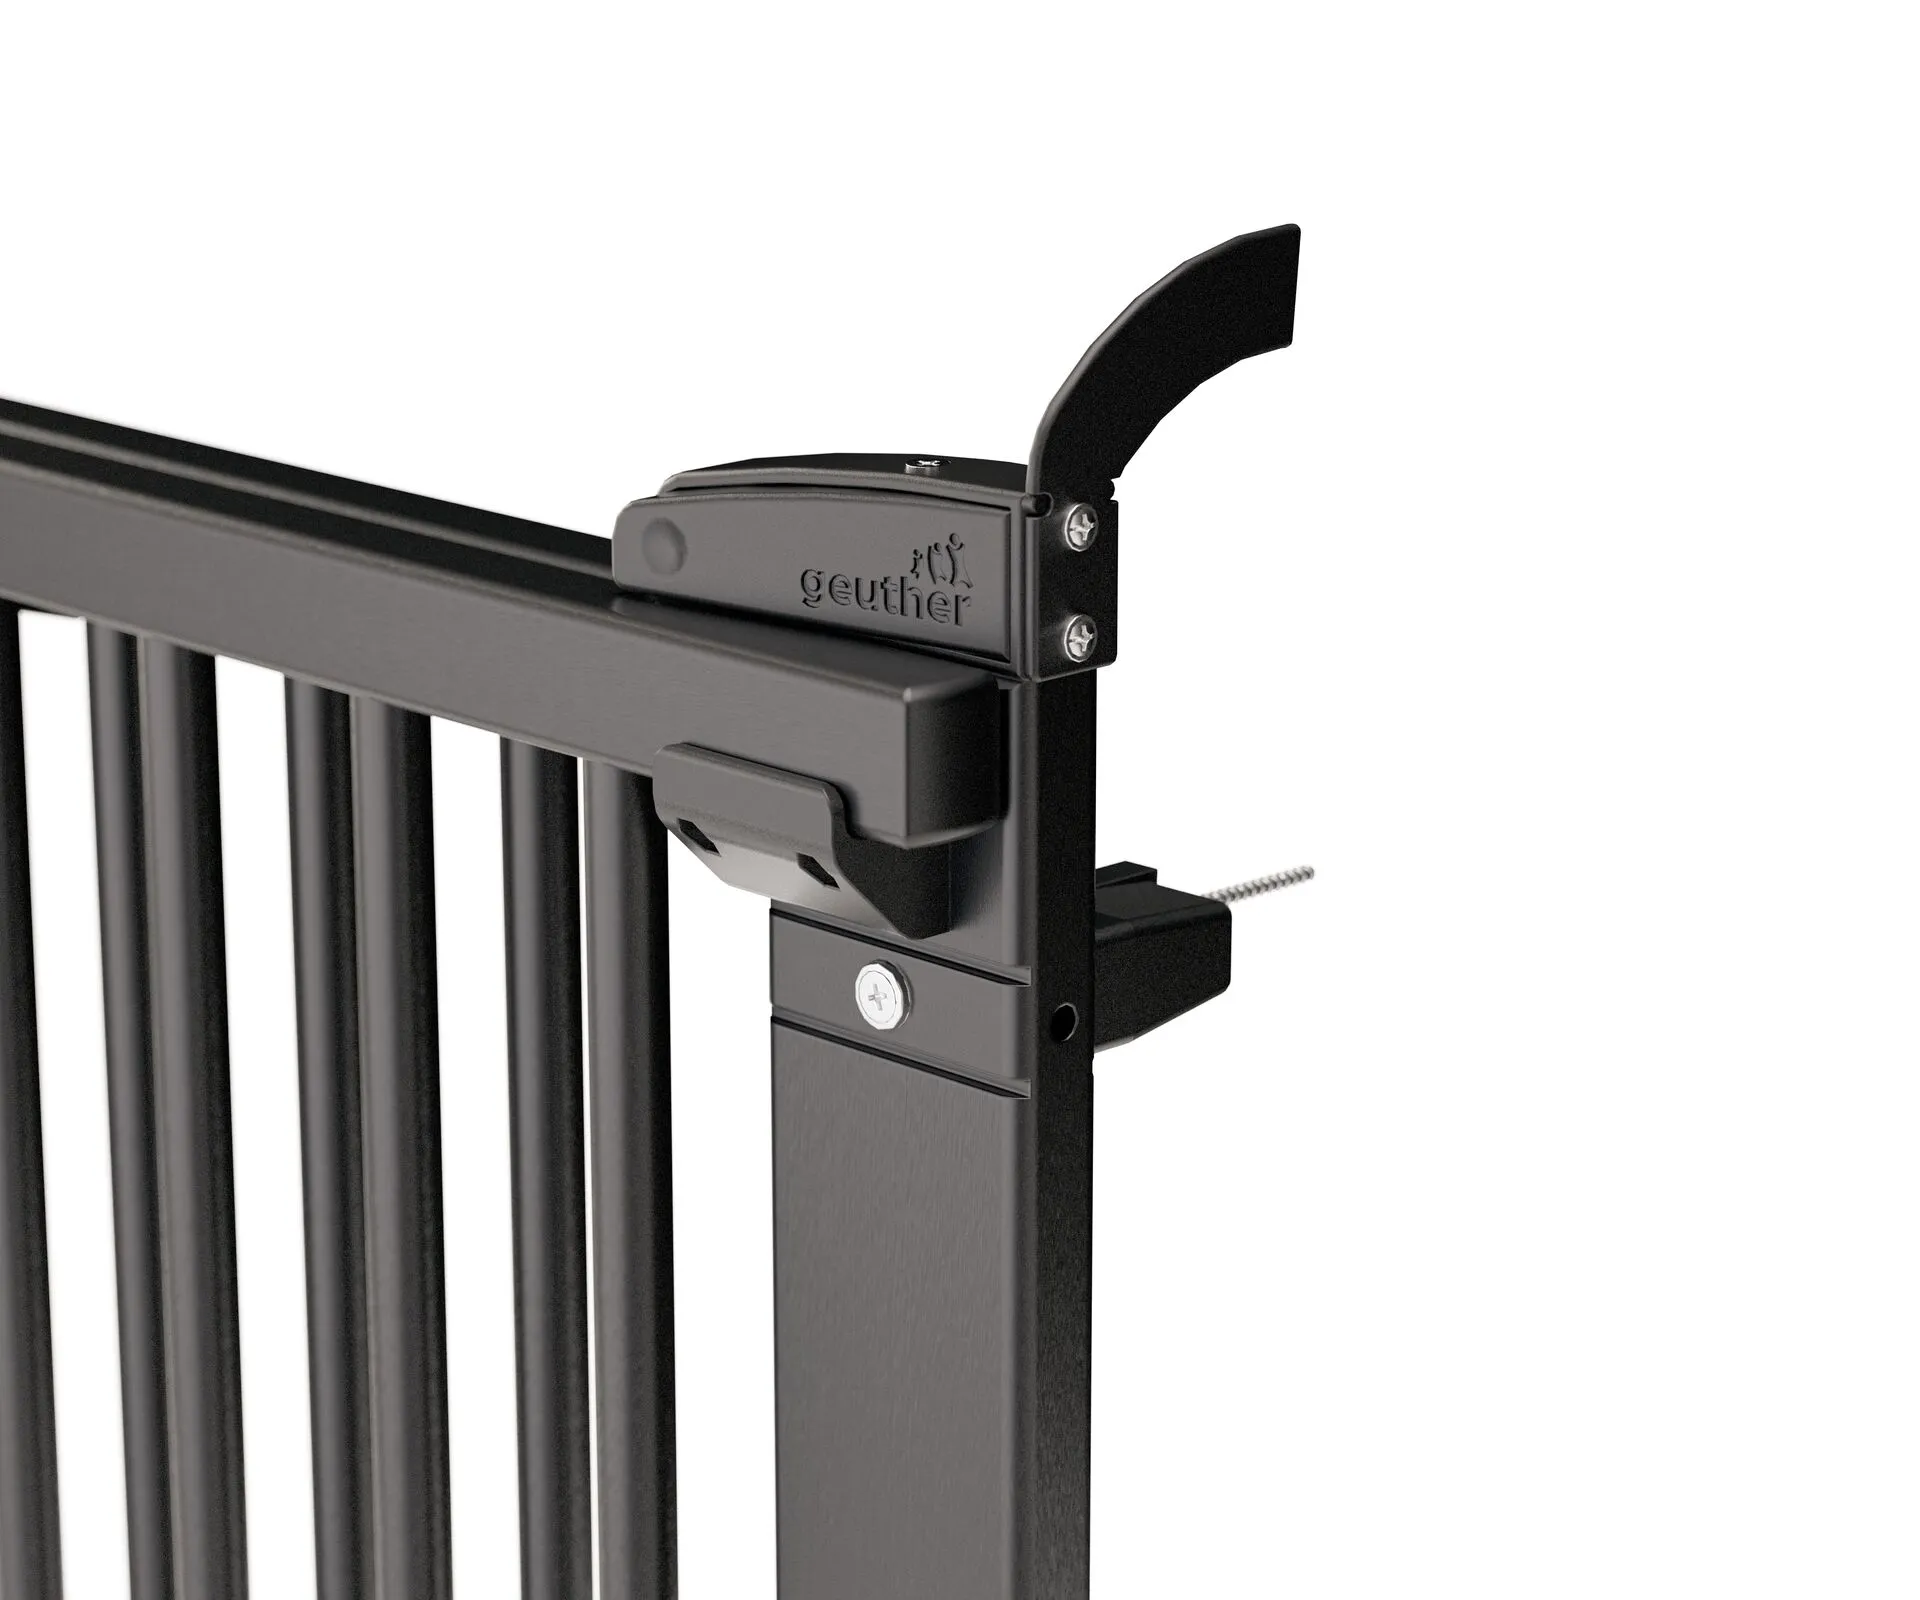 Rundstab Türschutzgitter 2732+ für Öffnungen von 58-105 cm aus Holz